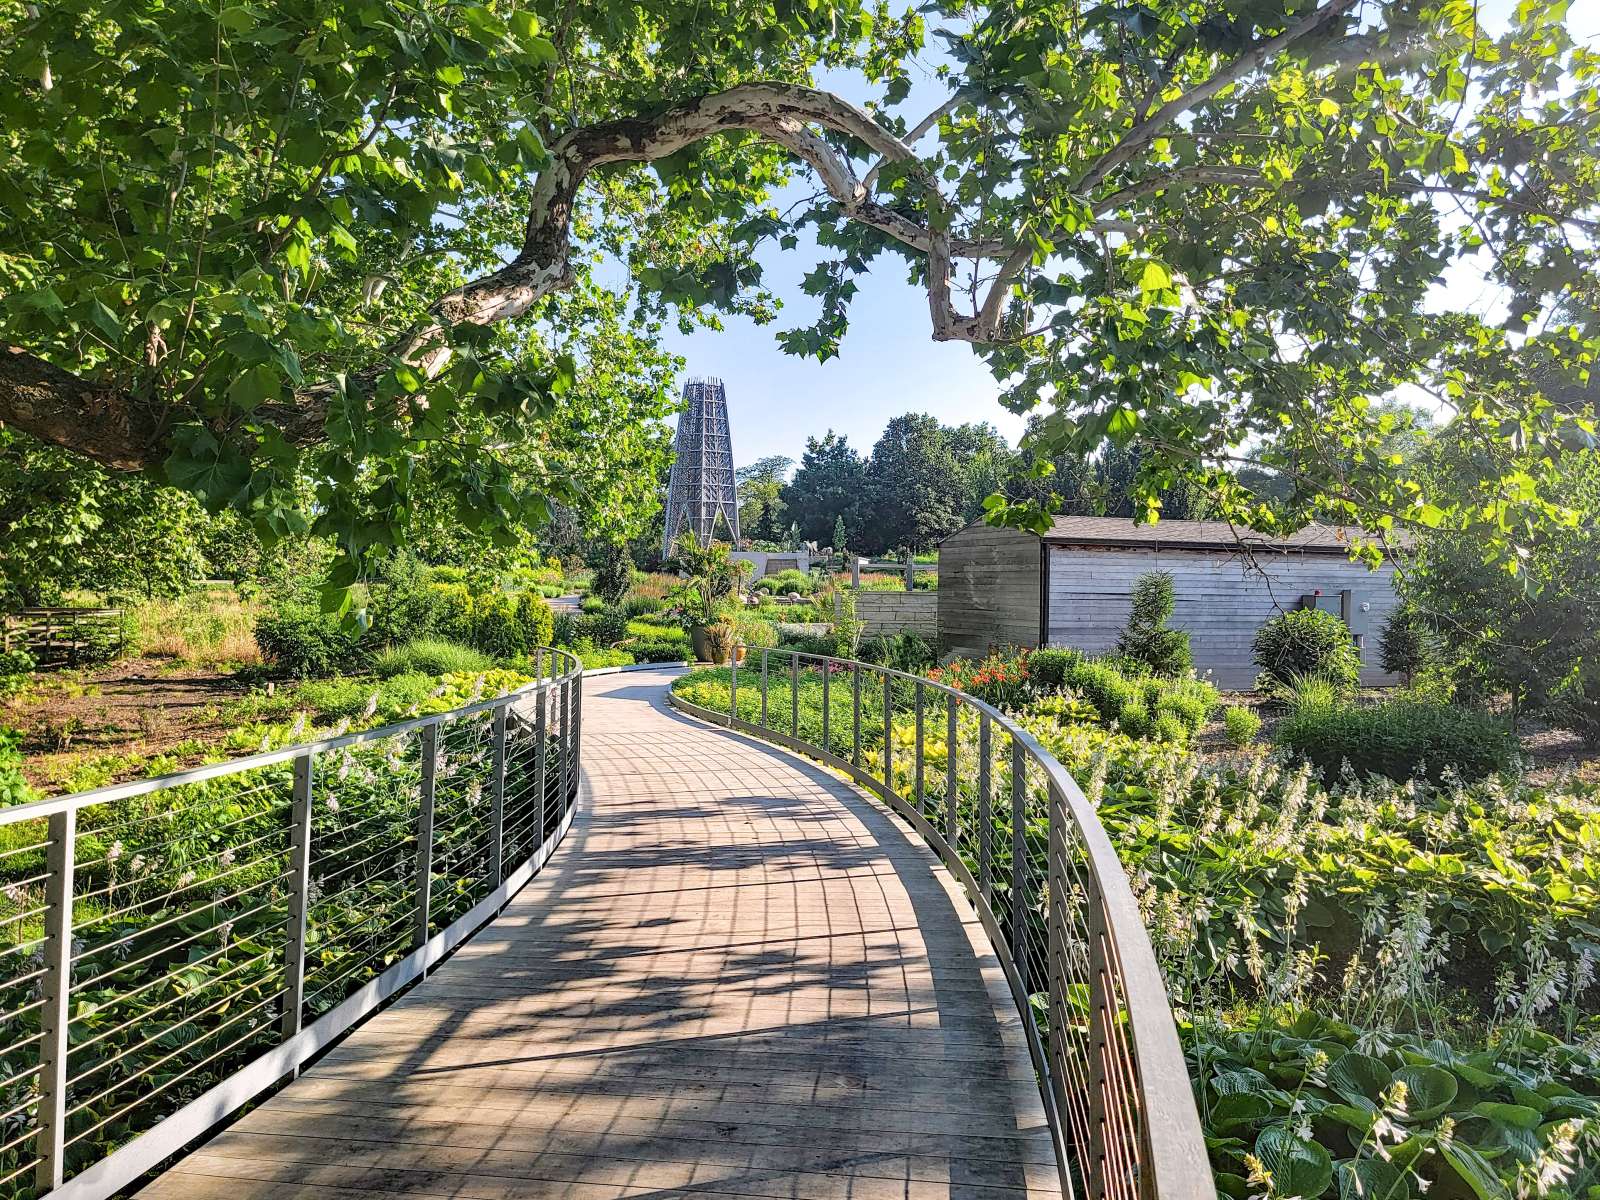 Reiman Gardens to rename popular pathway in honor of volunteers